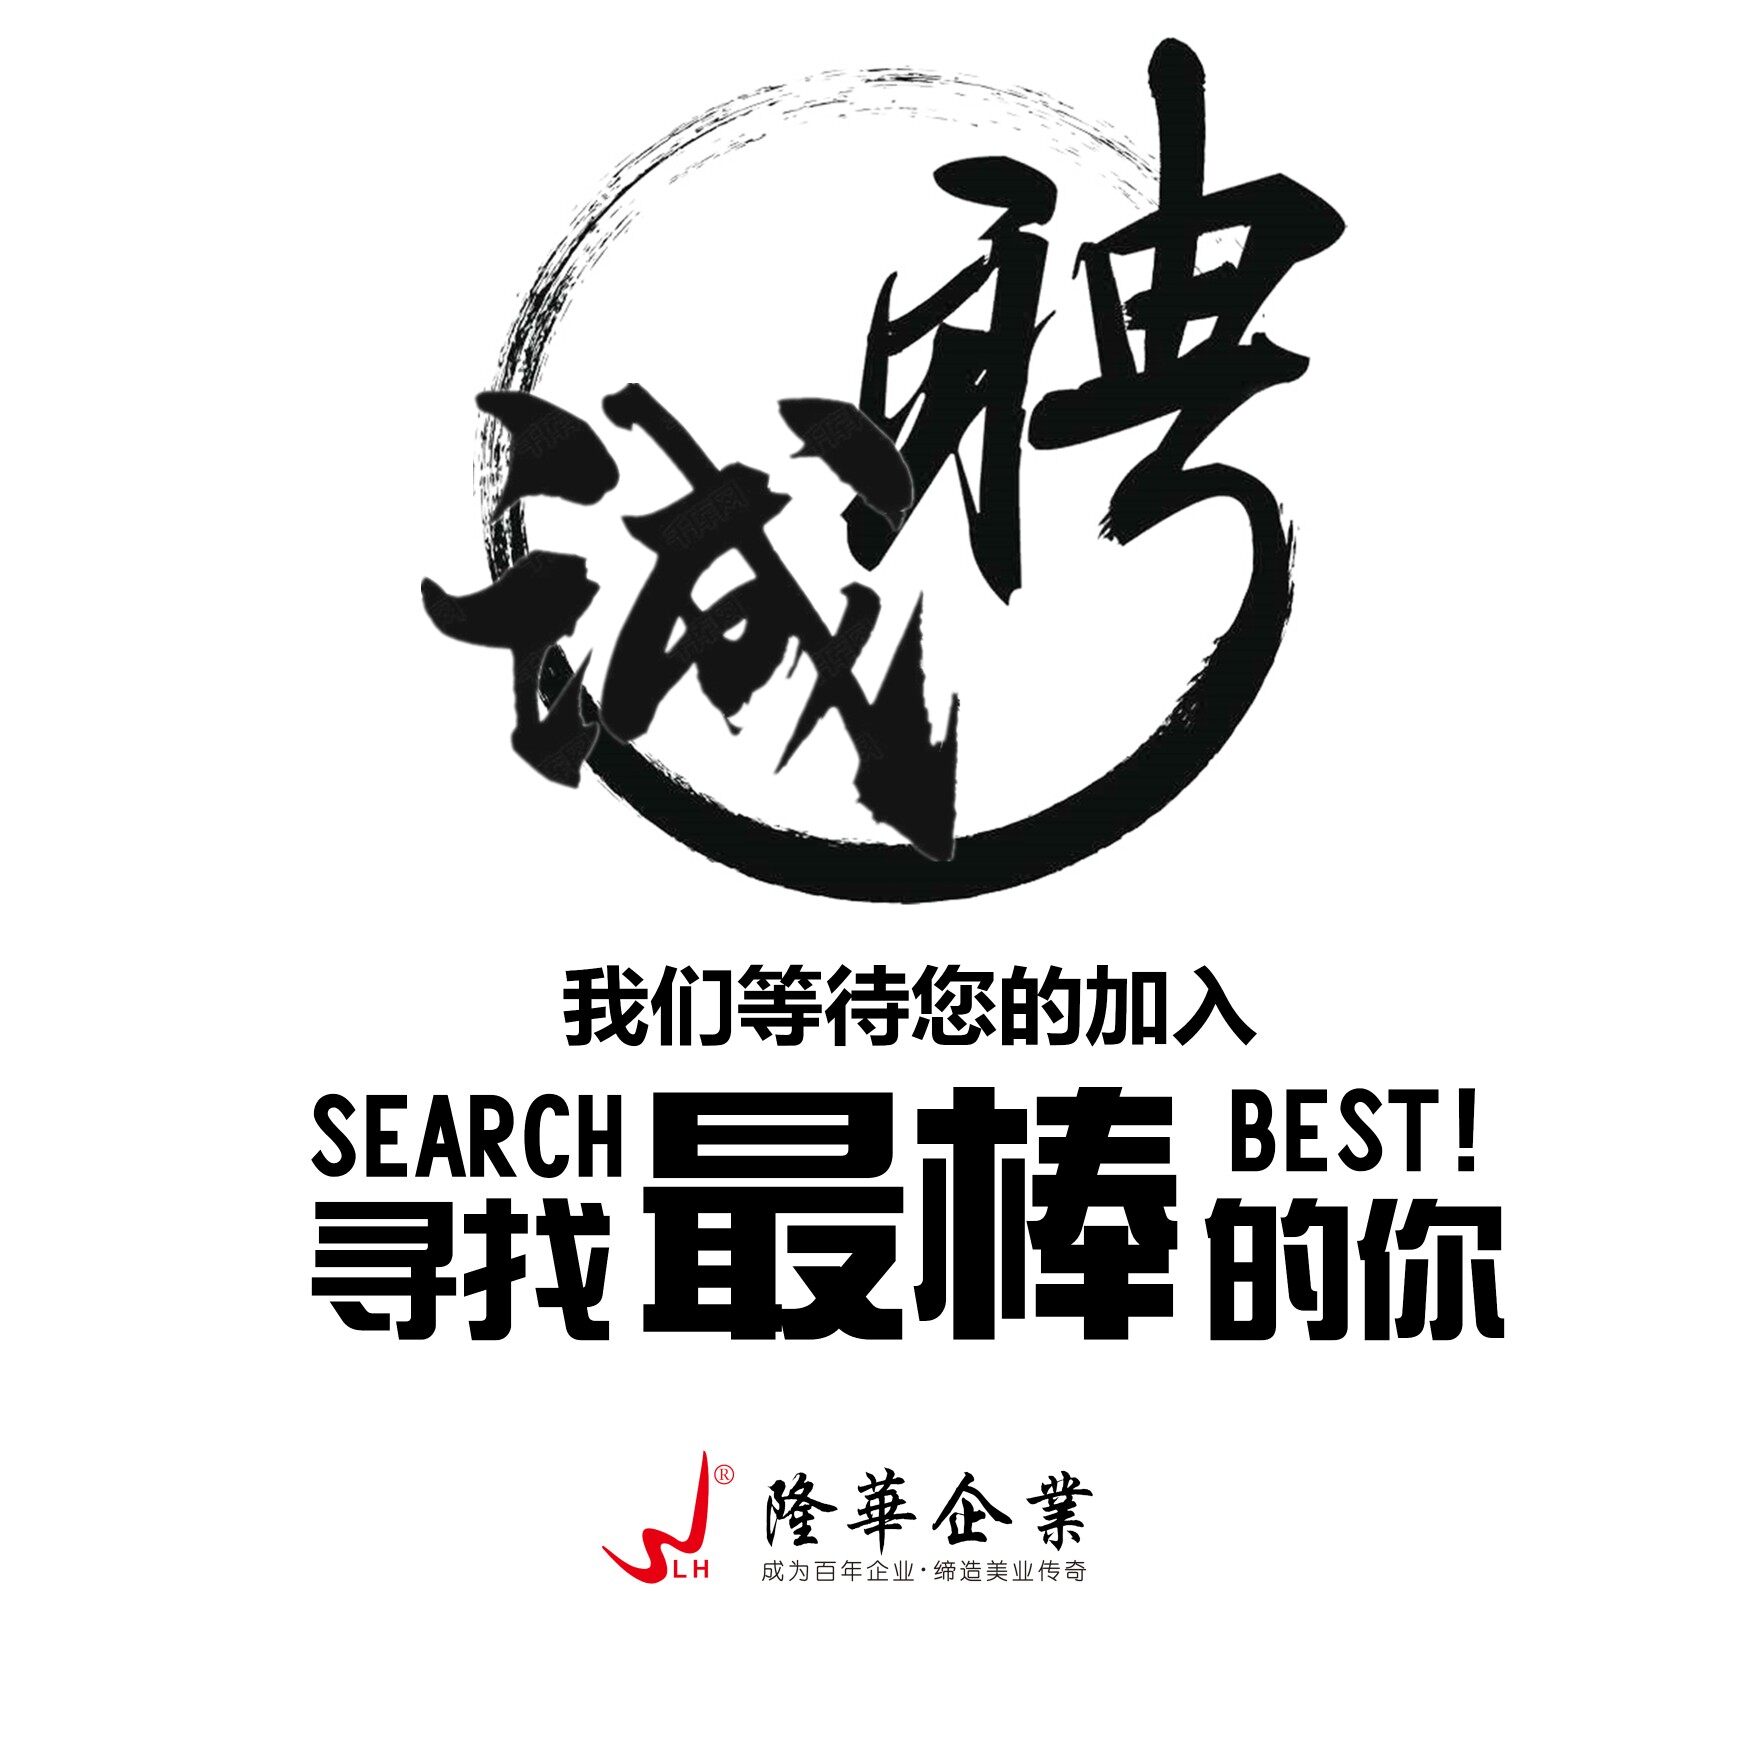 鞍山市隆华商贸有限公司logo